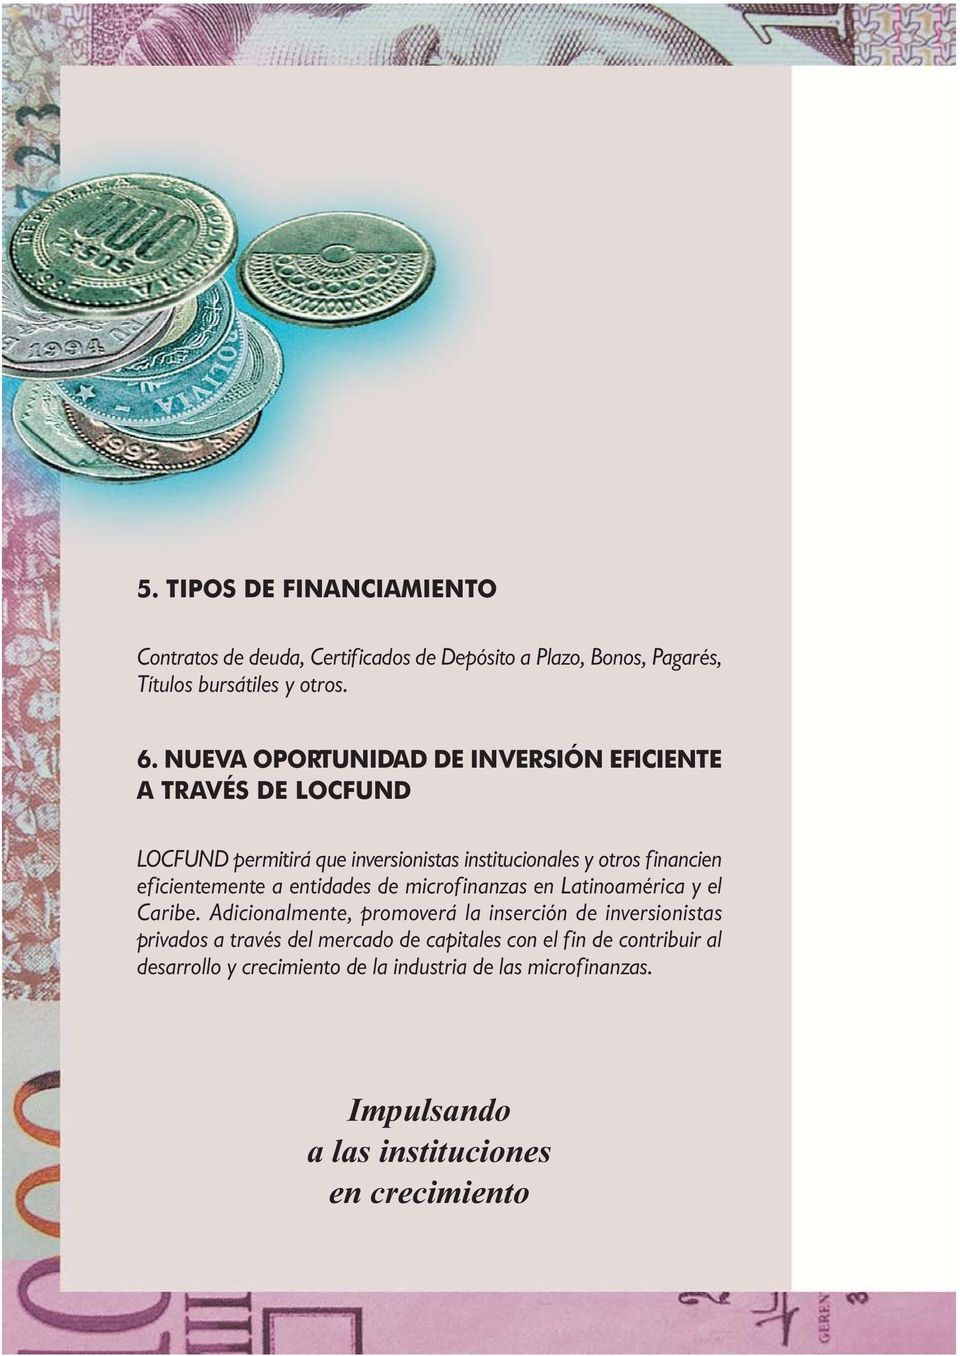 eficientemente a entidades de microfinanzas en Latinoamérica y el Caribe.